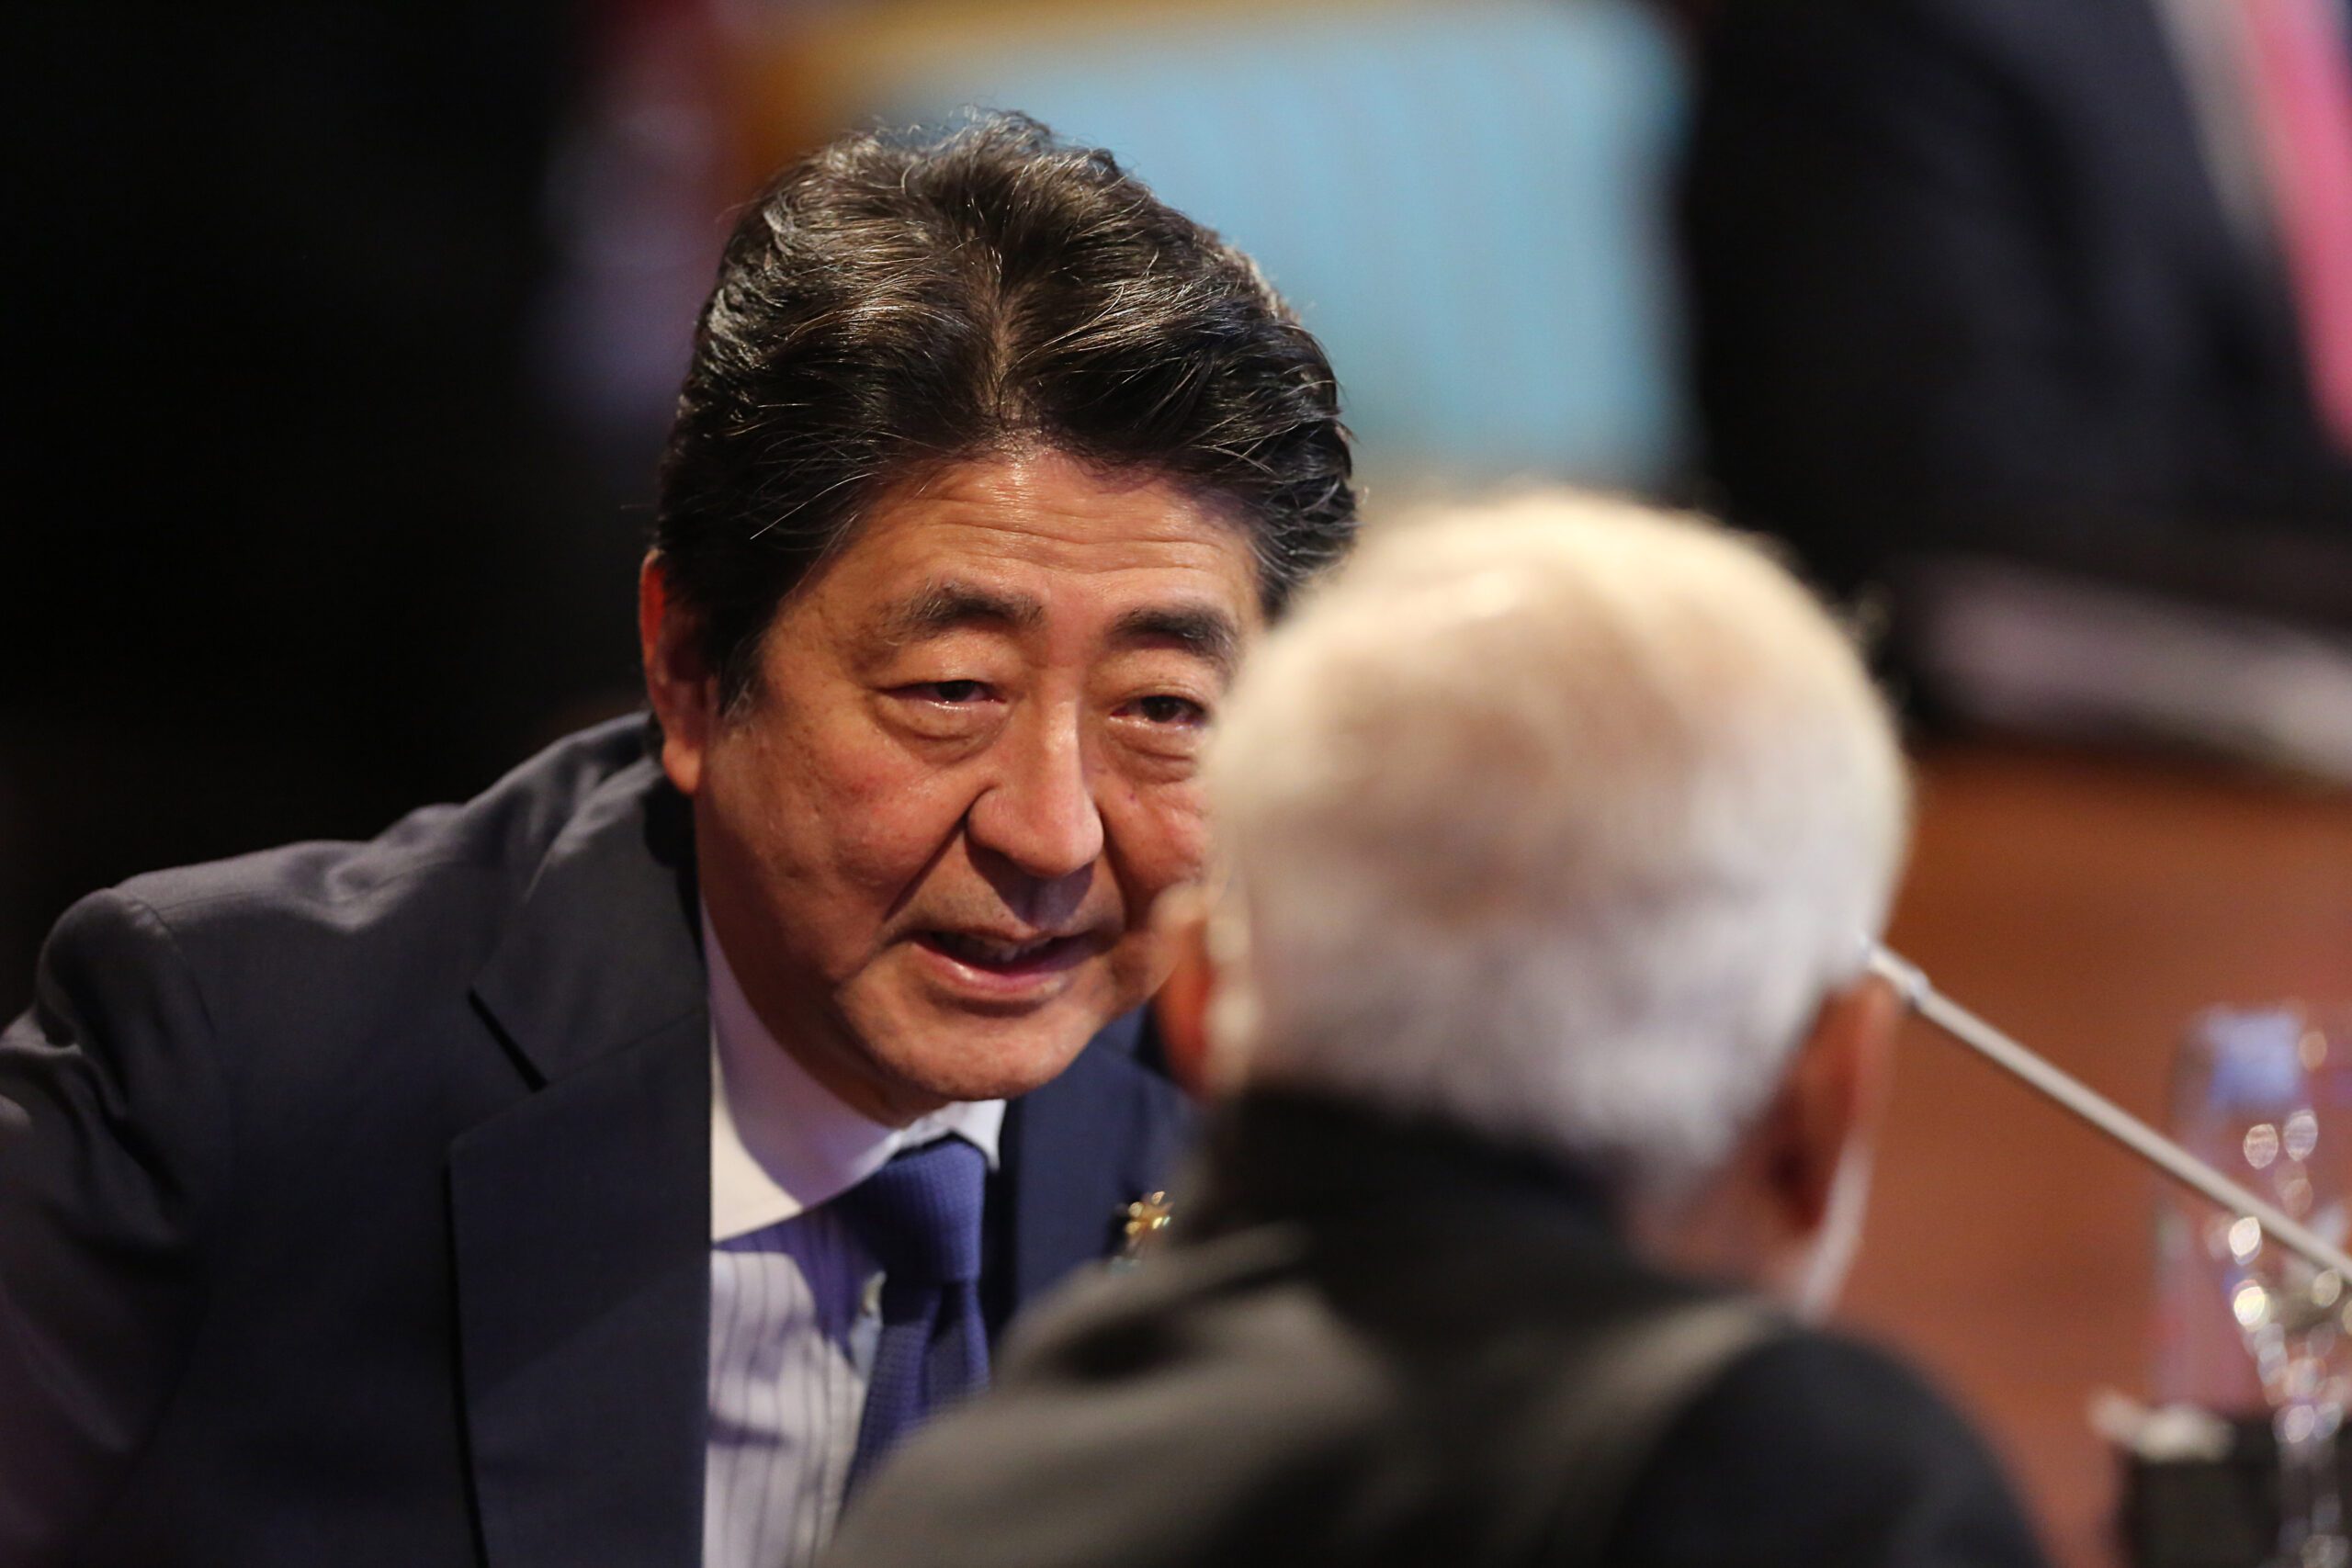 Japan PM Abe to make rare China visit